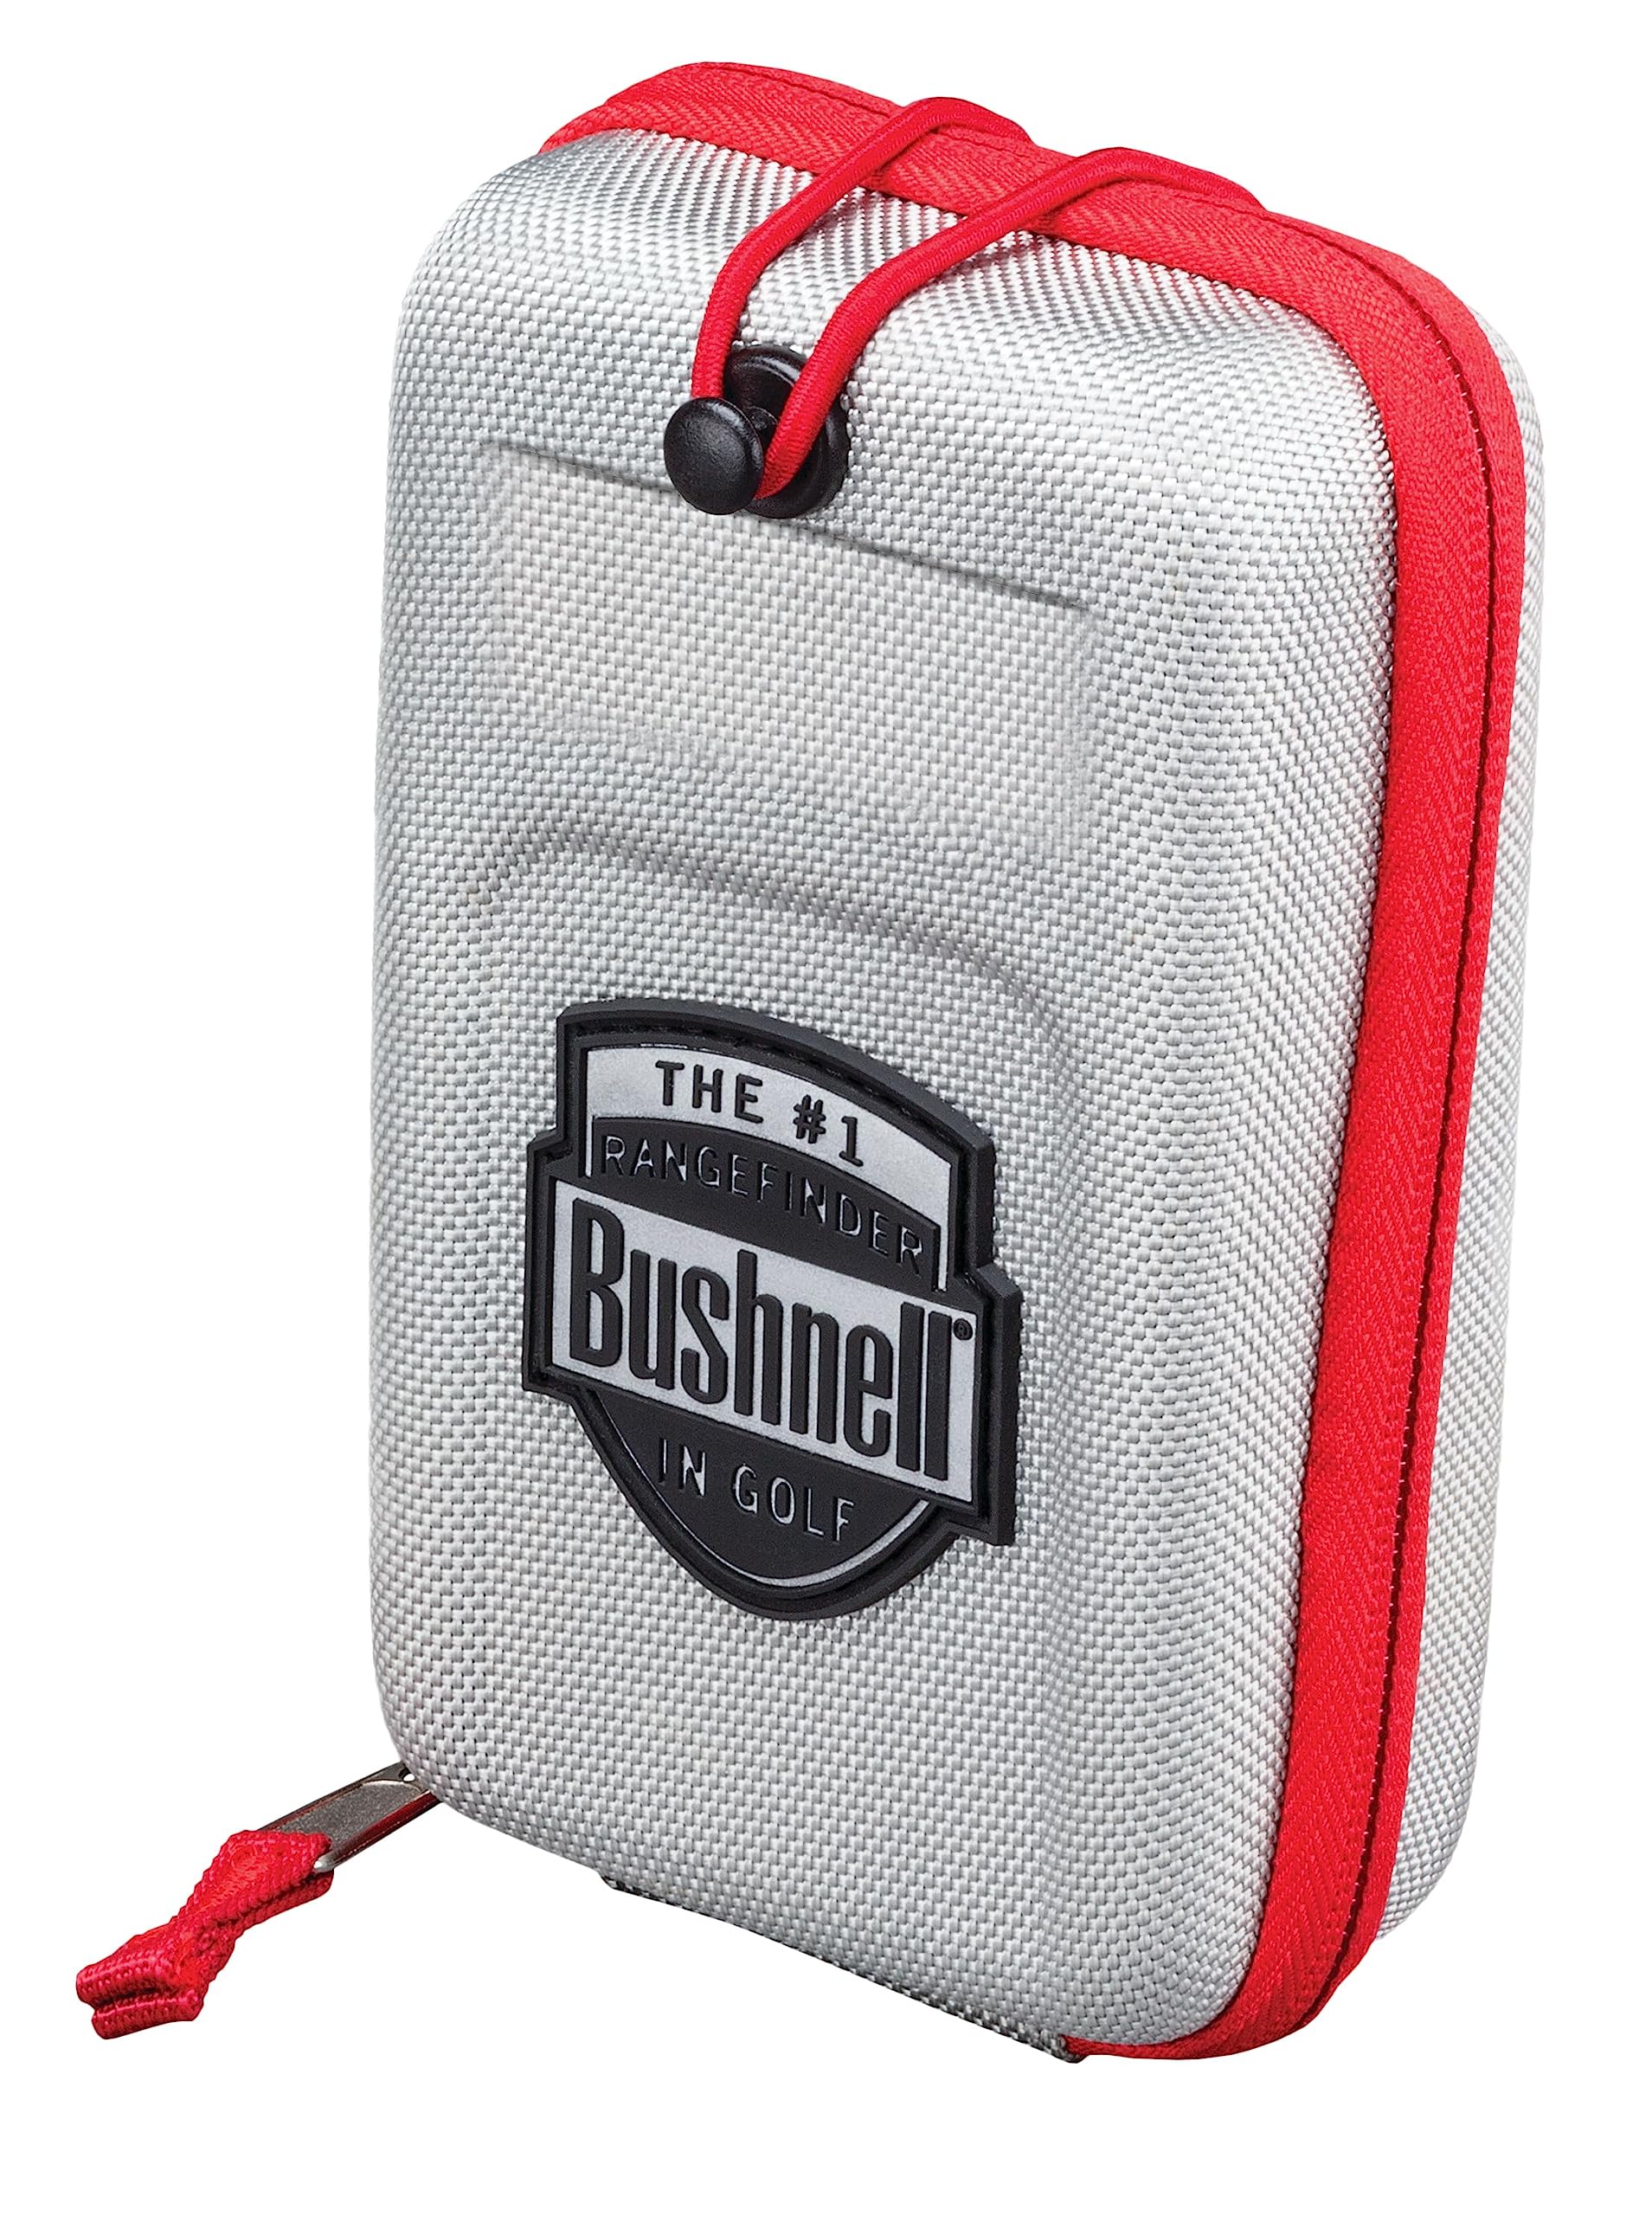 Bushnell Tour V6 Golf Rangefinder Patriot Pack